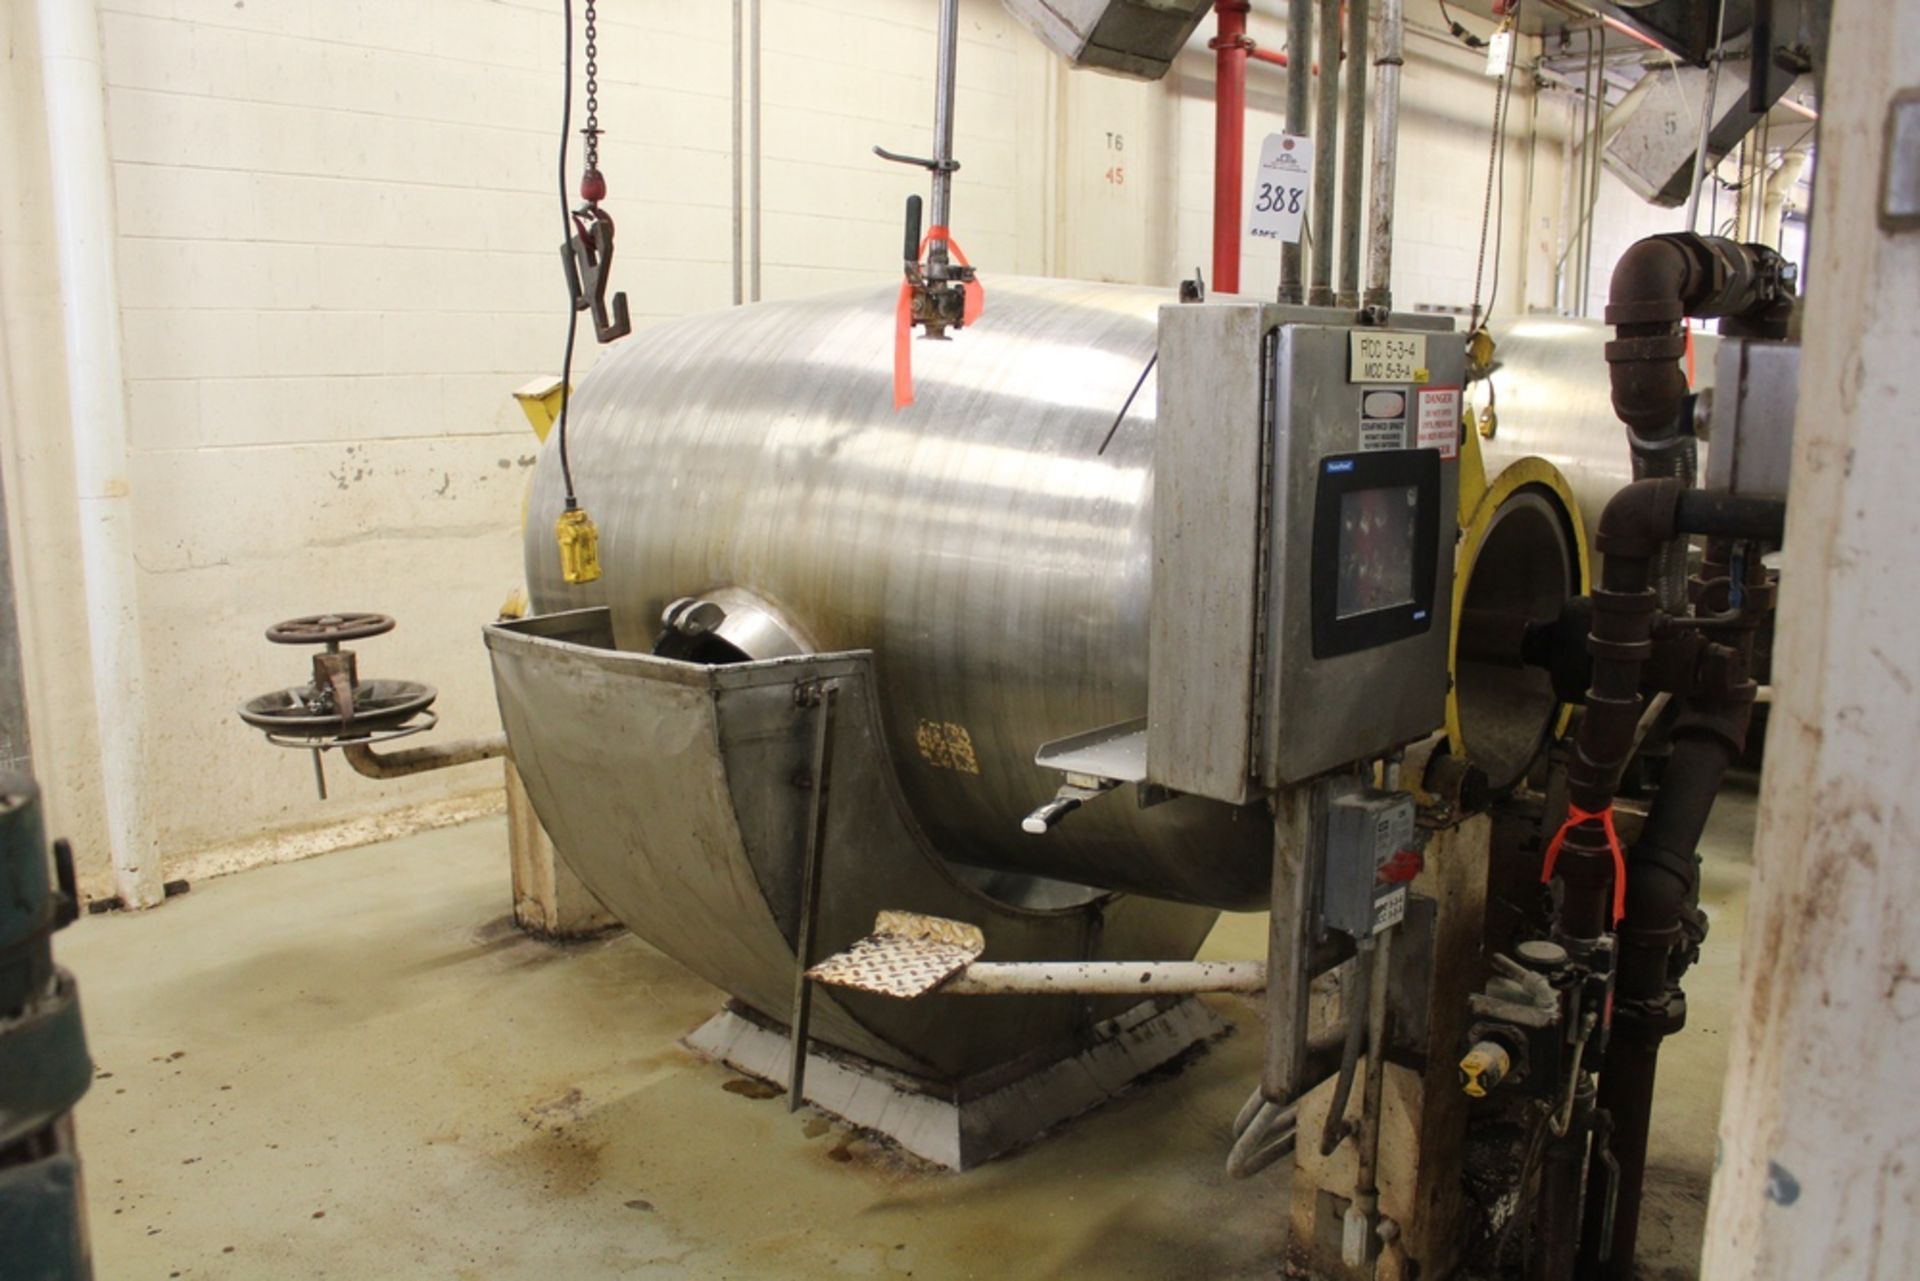 Hamilton 565 Gallon Rotary Steam Pressure Cooker | Rig Fee: $1200